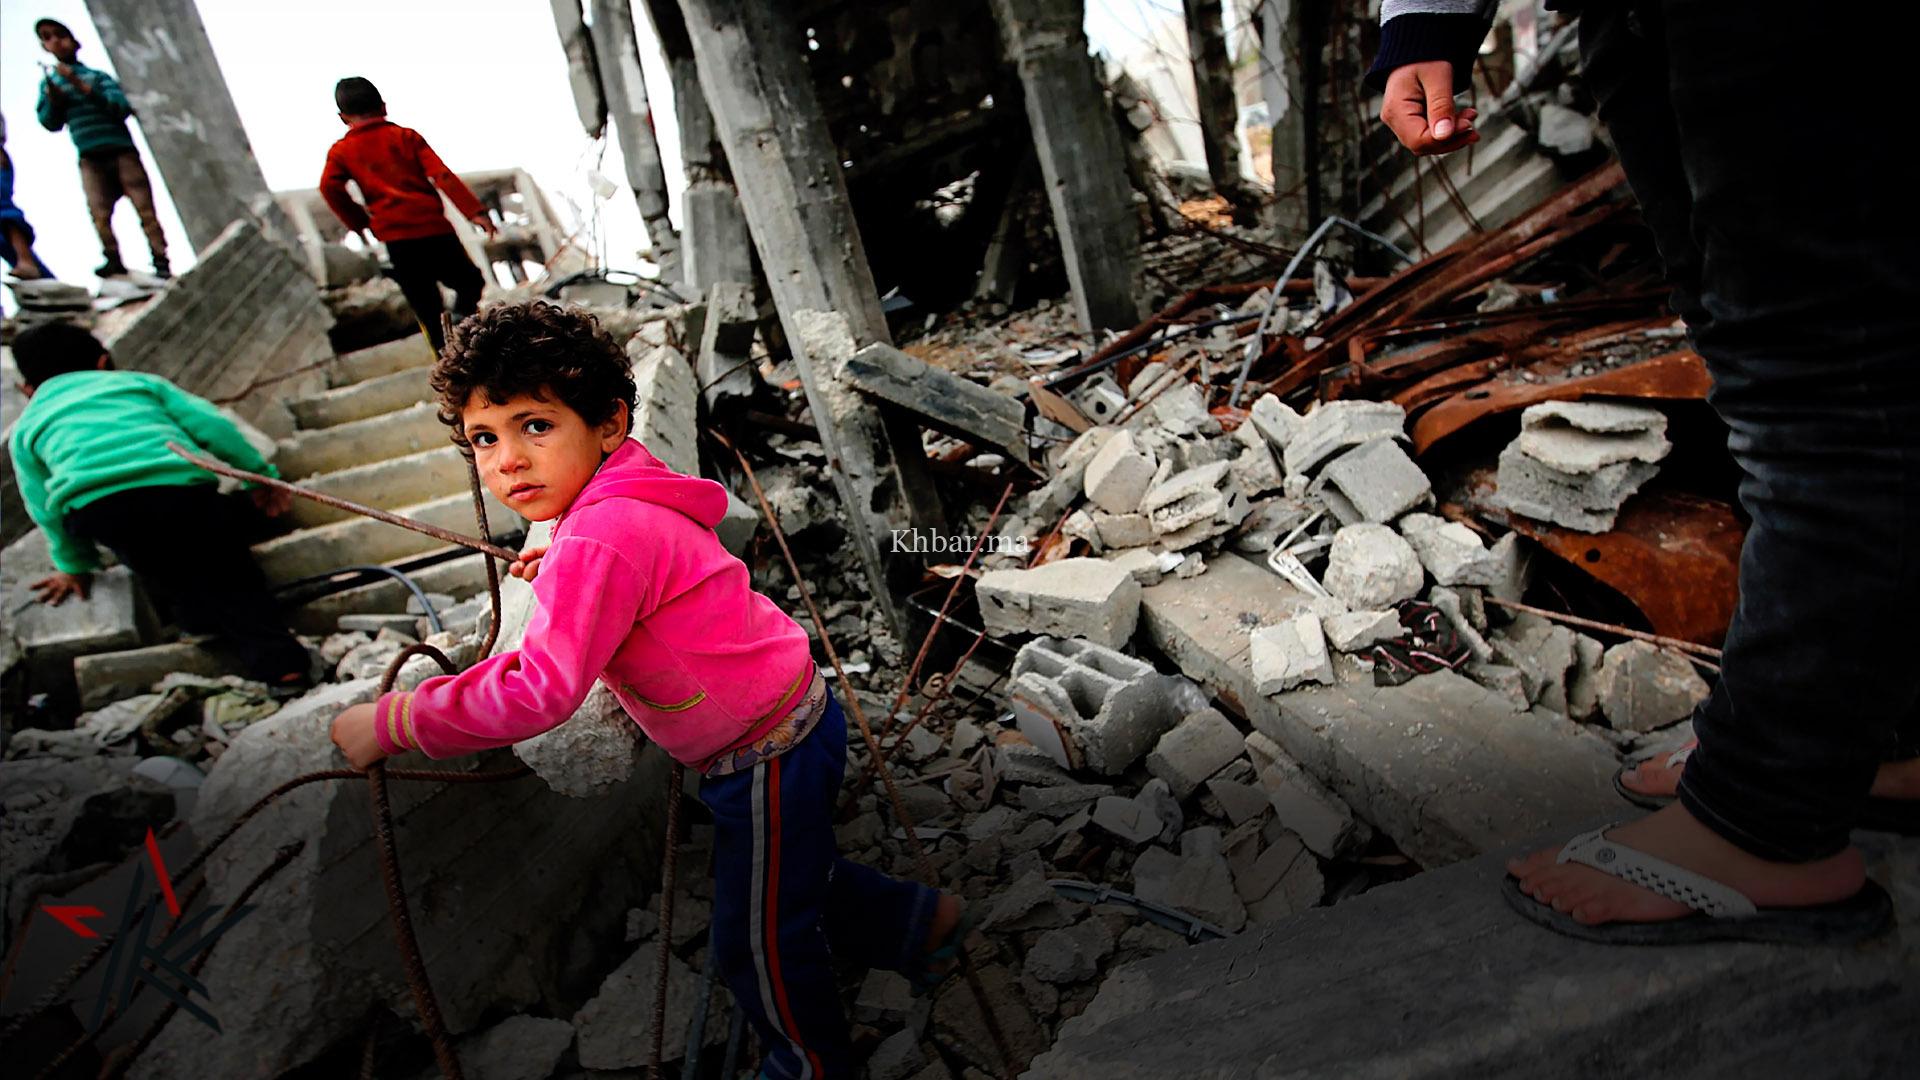 الكاتبة الفلسطينية البريطانية سلمى الدباغ حذرت في مقال لها من أزمة إنسانية صعبة في غزة